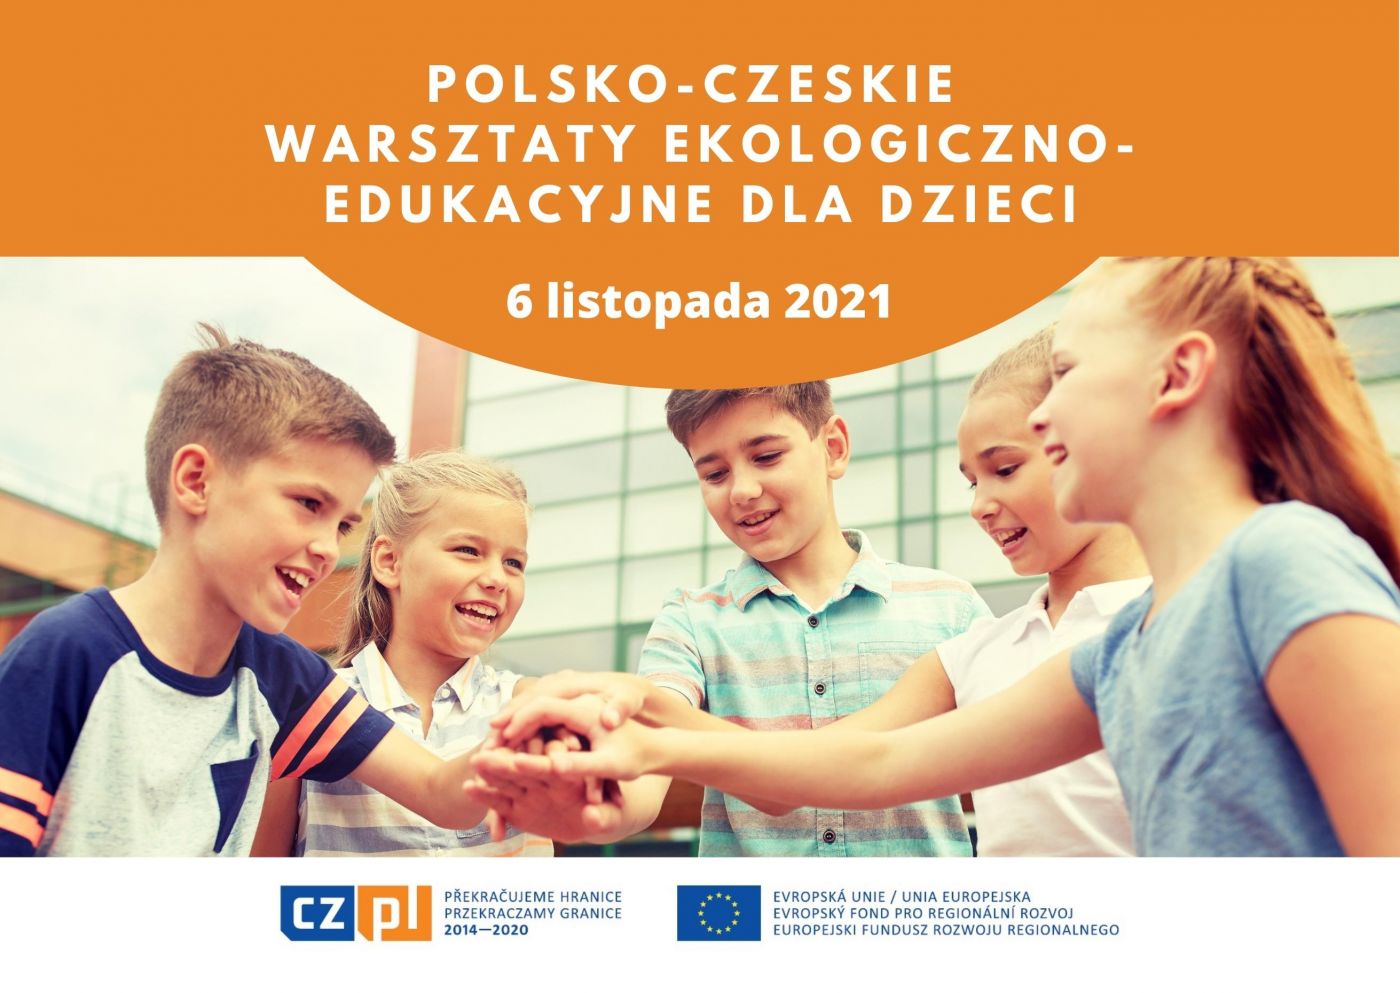 Polsko-czeskie warsztaty ekologiczno-edukacyjne dla dzieci